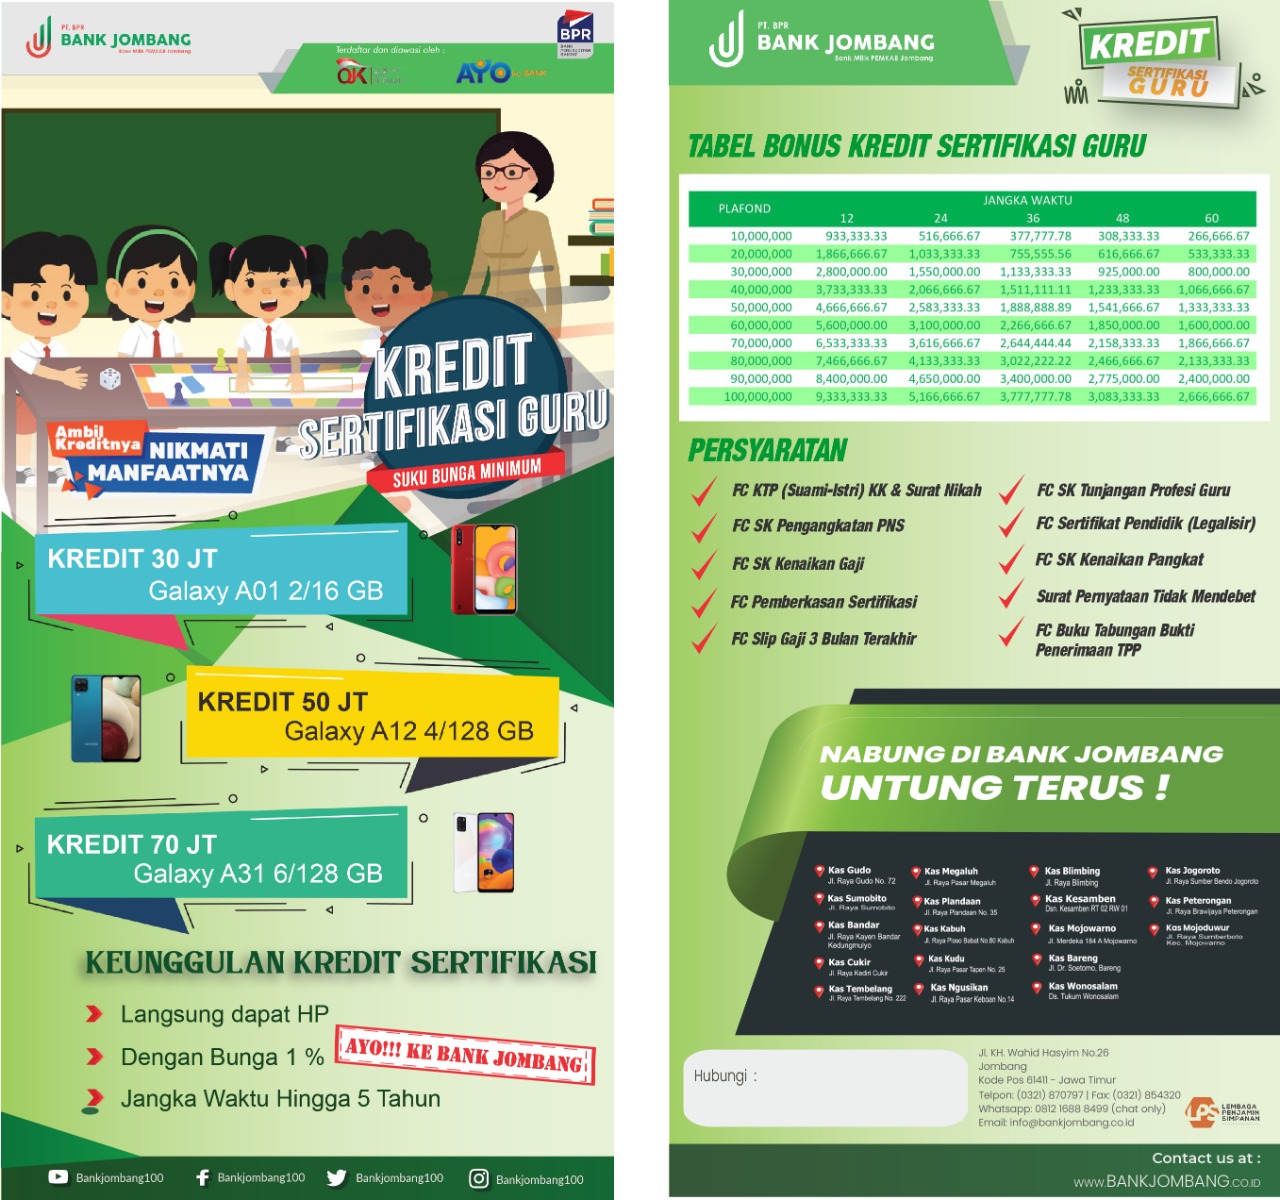 Kredit Sertifikasi Guru – PT. BPR Bank Jombang Perseroda